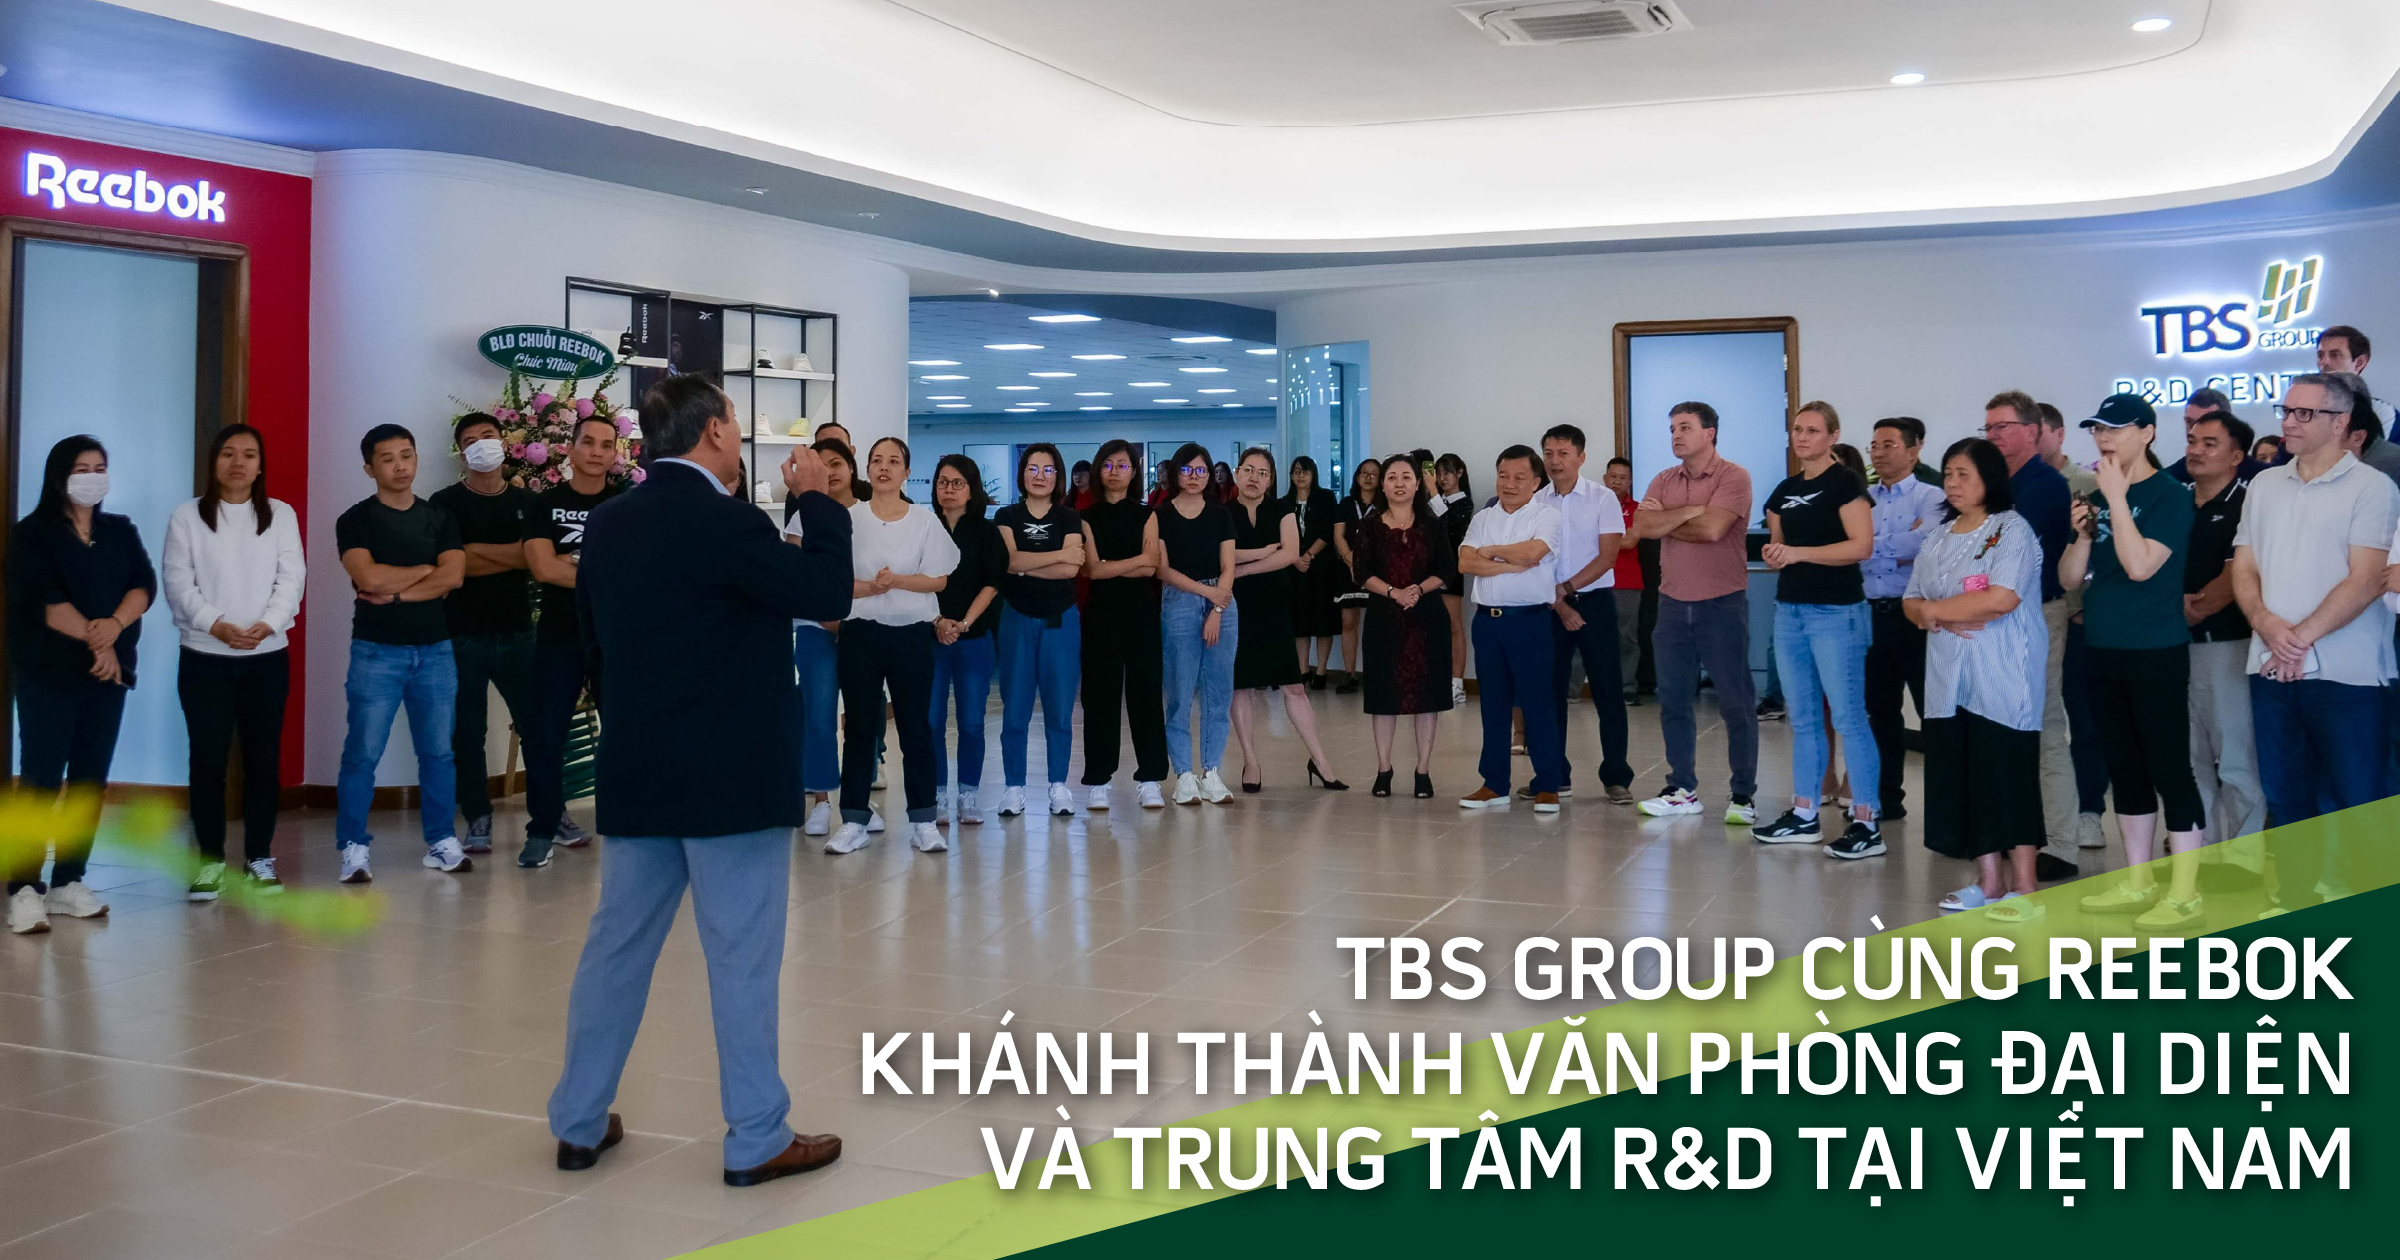 TBS Group cùng Reebok khánh thành văn phòng đại diện và Trung tâm R&D tại Việt Nam